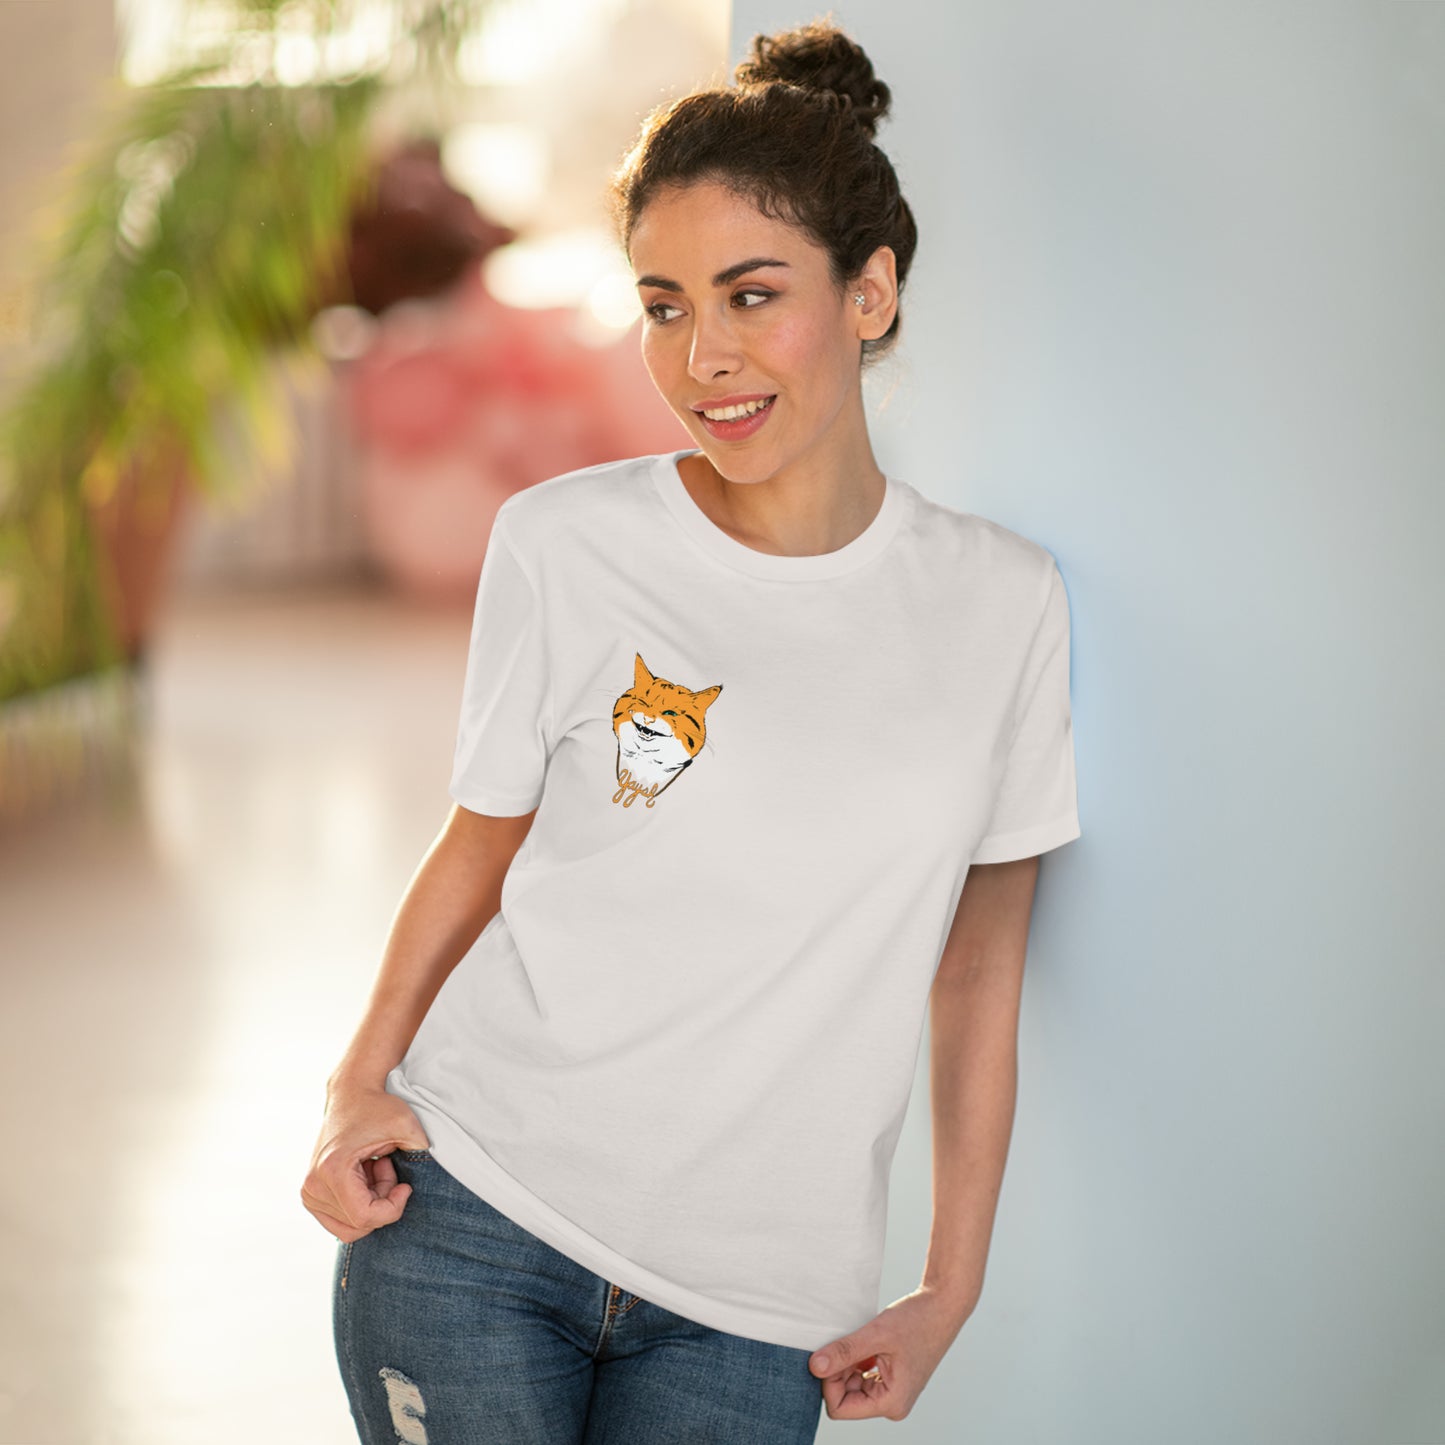 Yaysh Cat Organic Creator T-shirt - Unisex